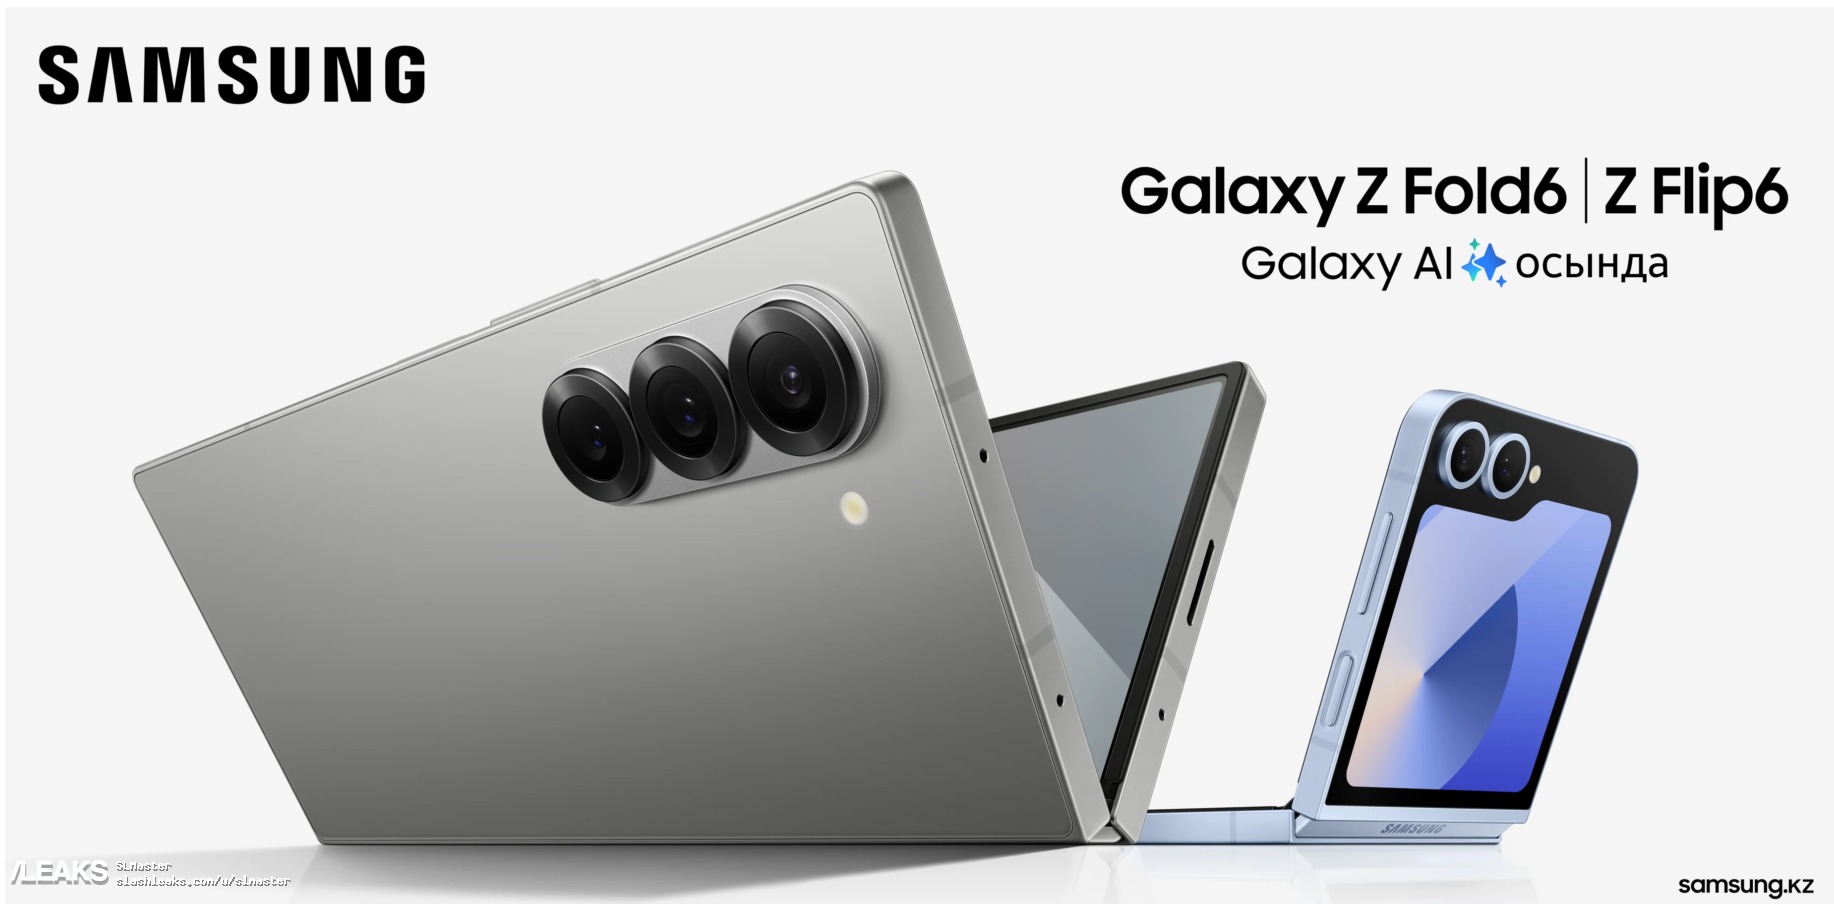 Se filtra una imagen promocional de los teléfonos plegables Samsung Galaxy Z Fold 6 y Z Flip 6